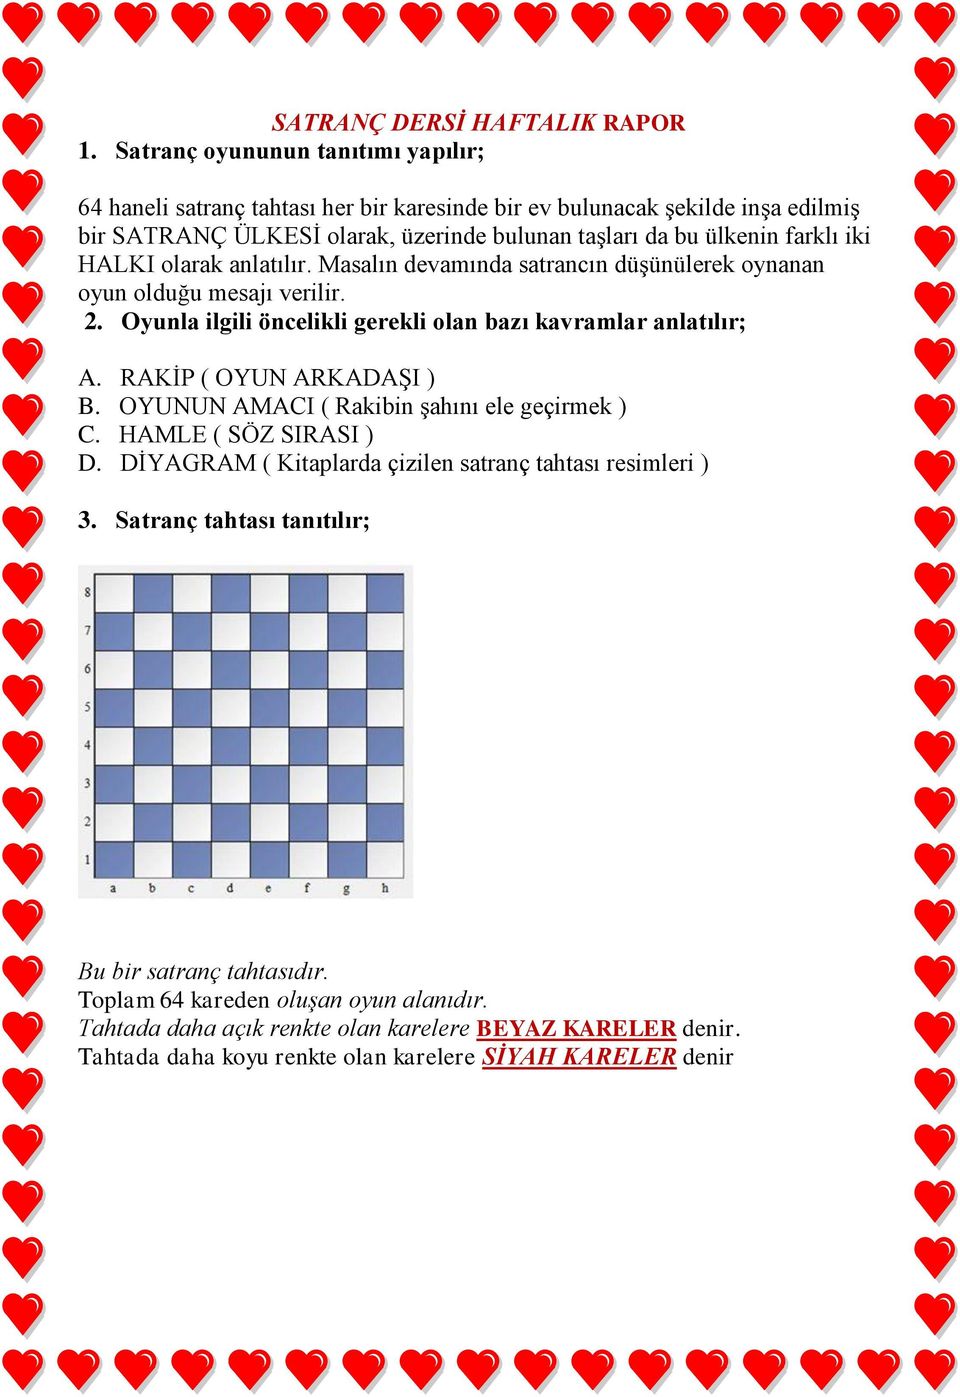 iki HALKI olarak anlatılır. Masalın devamında satrancın düşünülerek oynanan oyun olduğu mesajı verilir. 2. Oyunla ilgili öncelikli gerekli olan bazı kavramlar anlatılır; A.